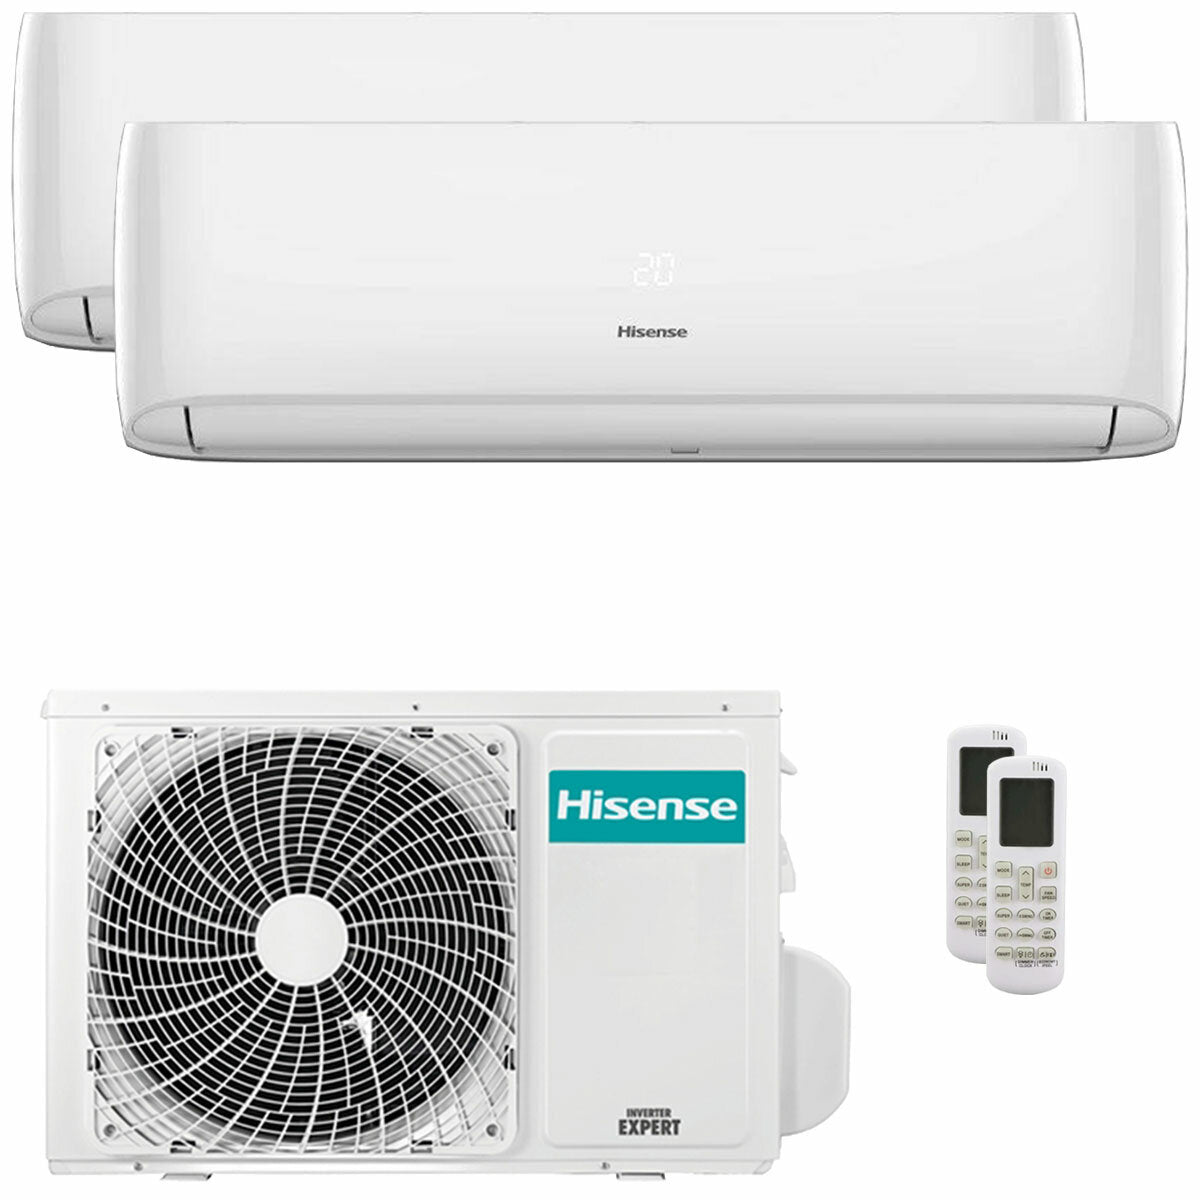 Hisense Hi-Comfort Dual-Split-Klimaanlage 7000+12000 BTU Inverter A++ WLAN-Außeneinheit 5,5 kW